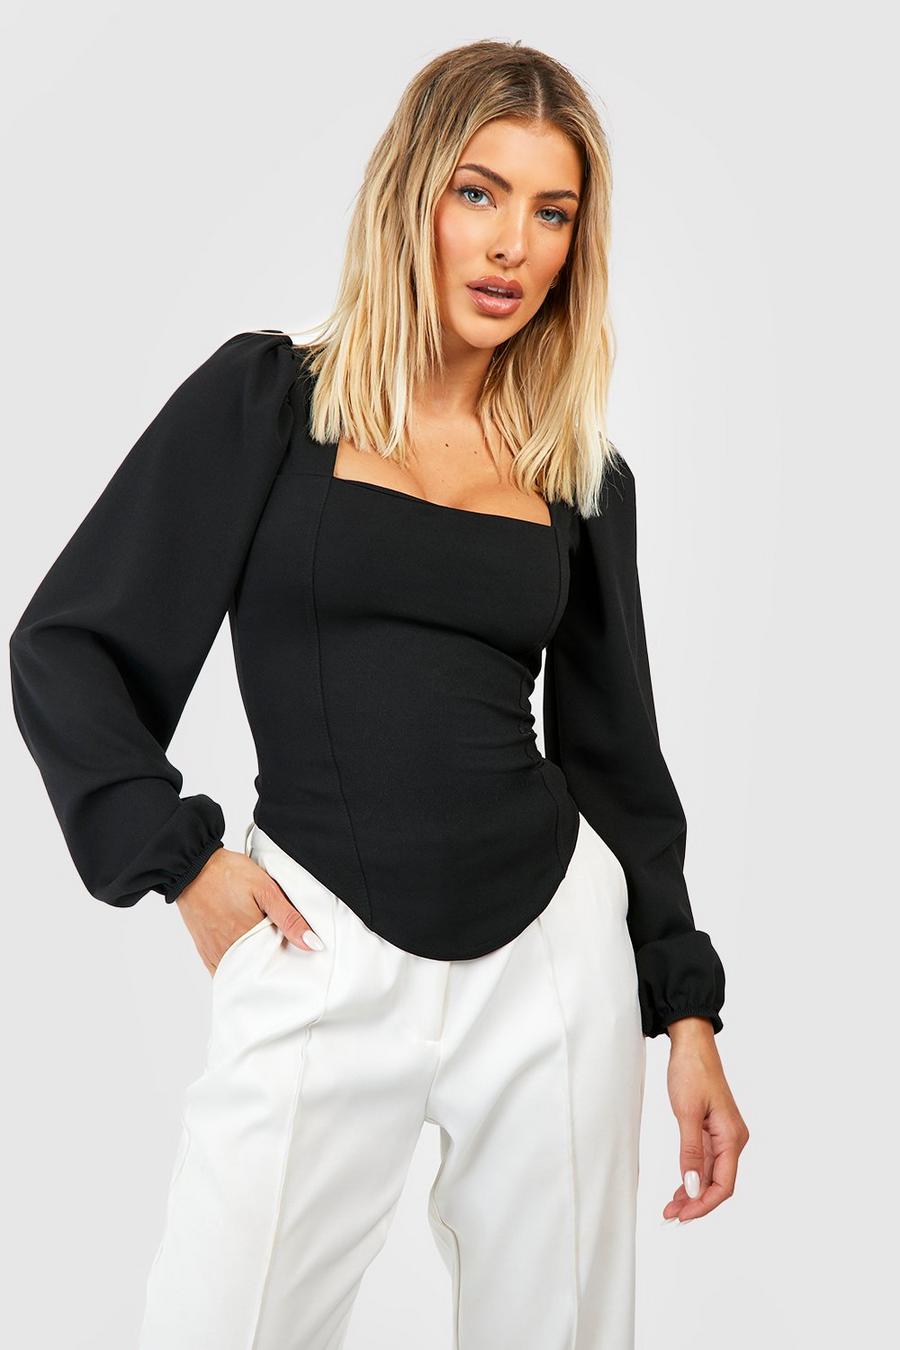 https://media.boohoo.com/i/boohoo/gzz54348_black_xl/female-black-long-sleeve-corset-top/?w=900&qlt=default&fmt.jp2.qlt=70&fmt=auto&sm=fit